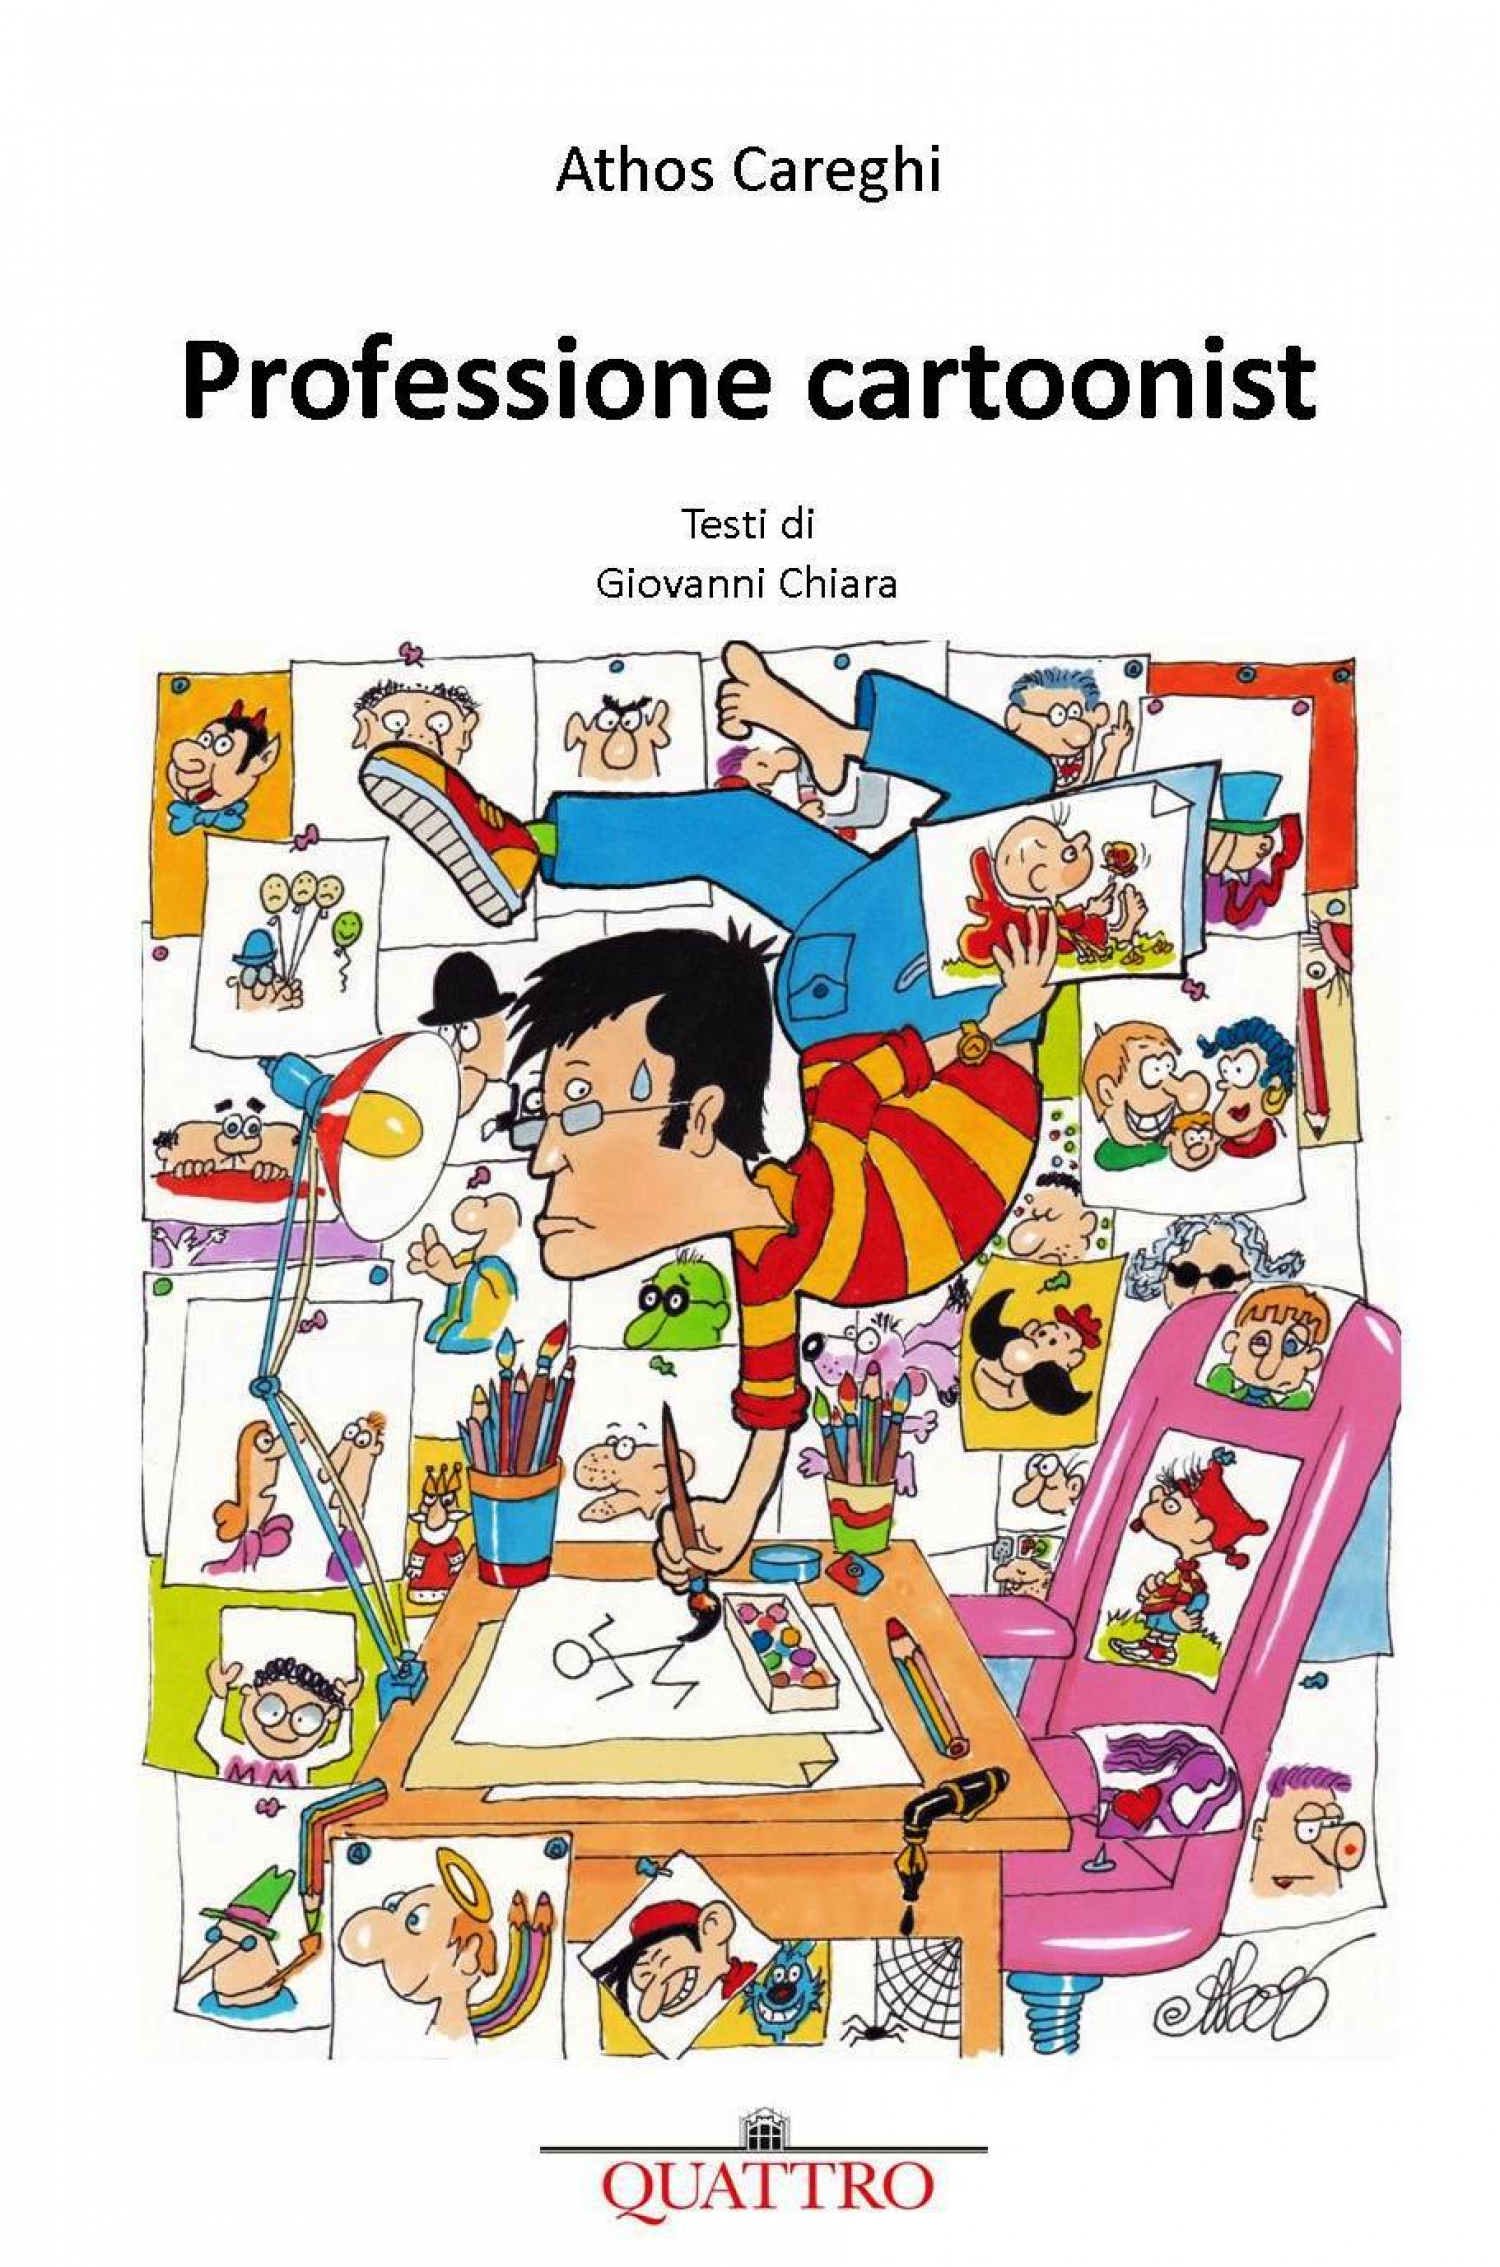 <p>Il mensile della zona 4 di Milano, <strong><a target="_blank" href="http://quattronet2.it/">QUATTRO</a></strong>, ospita dal 2008 le vignette di <strong>Athos</strong>. L&rsquo;artista illustra anche i racconti e le &quot;Storie di storia&quot; dello scrittore Giovanni Chiara.Il libro <strong>Professione Cartoonist</strong>, pubblicato da QUATTRO, raccoglie <strong>100 vignette</strong> realizzate da Athos negli ultimi anni, suddivise in alcune ampie categorie (la citt&agrave;, il cibo, l&#39;ospedale, il noir, ecc.) introdotte con <strong>spirito ironico e pungente</strong> da un breve testo dello scrittore <strong>Giovanni Chiara</strong>. Athos osserva la ricca e multiforme realt&agrave; del presente con acutezza, popola il suo mondo di figure ingenue, furbette o stupite, che in una sintesi perfetta ci fanno sorridere e riflettere sulla nostra condizione, riuscendo a rappresentare l&rsquo;assurdo e l&rsquo;inevitabile destino degli umani. Il libro &egrave; un omaggio all&rsquo;artista che offre un quadro ampio e variegato dei suoi personaggi, dei suoi temi e del suo inconfondibile stile. <strong>Domenica 18 giugno alle ore 16:30</strong> Athos sar&agrave; ospite di WOW Spazio Fumetto per raccontare i segreti del mestiere di vignettista. Da<strong> sabato 17 giugno al 2 luglio 2017</strong> sar&agrave; inoltre possibile ammirare una <strong>selezione dei migliori disegni originali</strong> tratti dalla decennale collaborazione con Quattro. <strong>L&#39;AUTORE</strong> <a target="_blank" href="http://www.lfb.it/fff/fumetto/aut/a/athos.htm">Atos Careghi</a> in arte Athos nasce a Correggio (Reggio Emilia, Italia) nel 1939. Si trasferisce a Milano dopo alcuni anni in Olanda e in Belgio. E&#39; laureato in economia e commercio. Esordisce con una vignetta umoristica pubblicata sul <em>Vittorioso</em> nel 1952. Di pochissime parole - quasi tutte sornione e azzeccate - produce in prevalenza disegni senza battuta, sviluppa la sua prima produzione nell&#39;umorismo disegnato con vignette di stampo metafisico, tragiche, corrosive, per tali ragioni poco pubblicate. Fa parte di quella selezionata schiera di disegnatori ospitata, negli anni Sessanta, ne <em>Il delatore</em>, una pubblicazione forse troppo in anticipo sui tempi, che diventer&agrave; una ghiotta rarit&agrave; bibliografica. Poi si &quot;ravvede&quot;, e finalmente pubblica copiosamente su <em>Help</em>, <em>Bertoldo</em>, <em>Candido</em>, <em>King Kong</em>, <em>La Settimana Enigmistica</em>, periodici Mondadori (<em>Gialli</em>, <em>Neri</em>, <em>Segretissimo</em>, <em>Urania</em>), <em>Zakimort</em>, <em>Intrepido</em> e <em>Il Monello</em>, <em>Il Mago</em>, <em>Famiglia TV</em>, <em>Satyricon</em> (sezione del quotidiano<em> La Repubblica</em>), <em>La Gazzetta dello Sport</em>, <em>Corriere della Sera</em>, <em>Guerin Sportivo</em> e <em>Humor Graphic</em>. Oltre a produrre vignette umoristiche &quot;generaliste&quot;, &egrave; anche autore di vignette antimilitariste (&quot;Soldati&quot;, &quot;Signorn&ograve;&quot; e &quot;Pacifico&quot;) e sul mondo amministrativo (&quot;I burocrati&quot;), e di strisce (Mc Lader, Dada, Fiorello). A partire dagli anni Ottanta pubblica su <em>Il Giornalino</em> la sua striscia pi&ugrave; nota, <strong>Fra Tino</strong>, un candido monachino ricco di trovate fantasiose, che viene pubblicata settimanalmente. Le Edizioni S. Paolo ne hanno pubblicato anche una raccolta, &quot;I Fioretti di Fra Tino&quot; (tradotta anche in Brasile come &quot;Fioretti di Frai Tino&quot;). Partecipa &ndash; con frequenti riconoscimenti e vigorose pacche sulle spalle &ndash; a molte e importanti rassegne umoristiche, come la &quot;Notte delle vignette&quot; di Spotorno, Godega Fumetto, e i festival di Gallarate, Cavernaga e Forte dei Marmi</p>